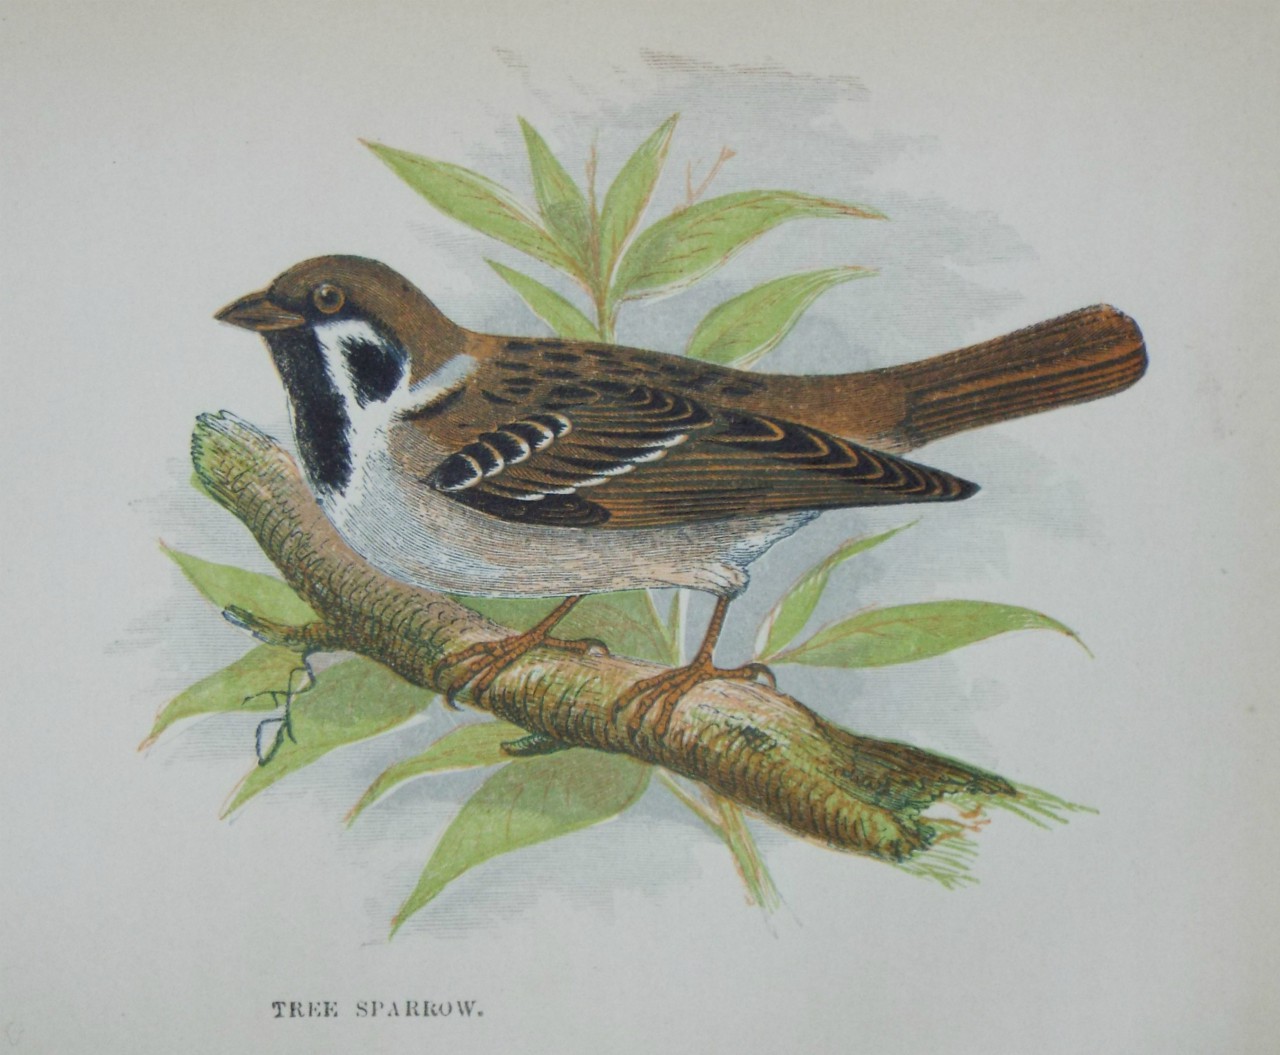 Chromo-lithograph - Tree Sparrow.